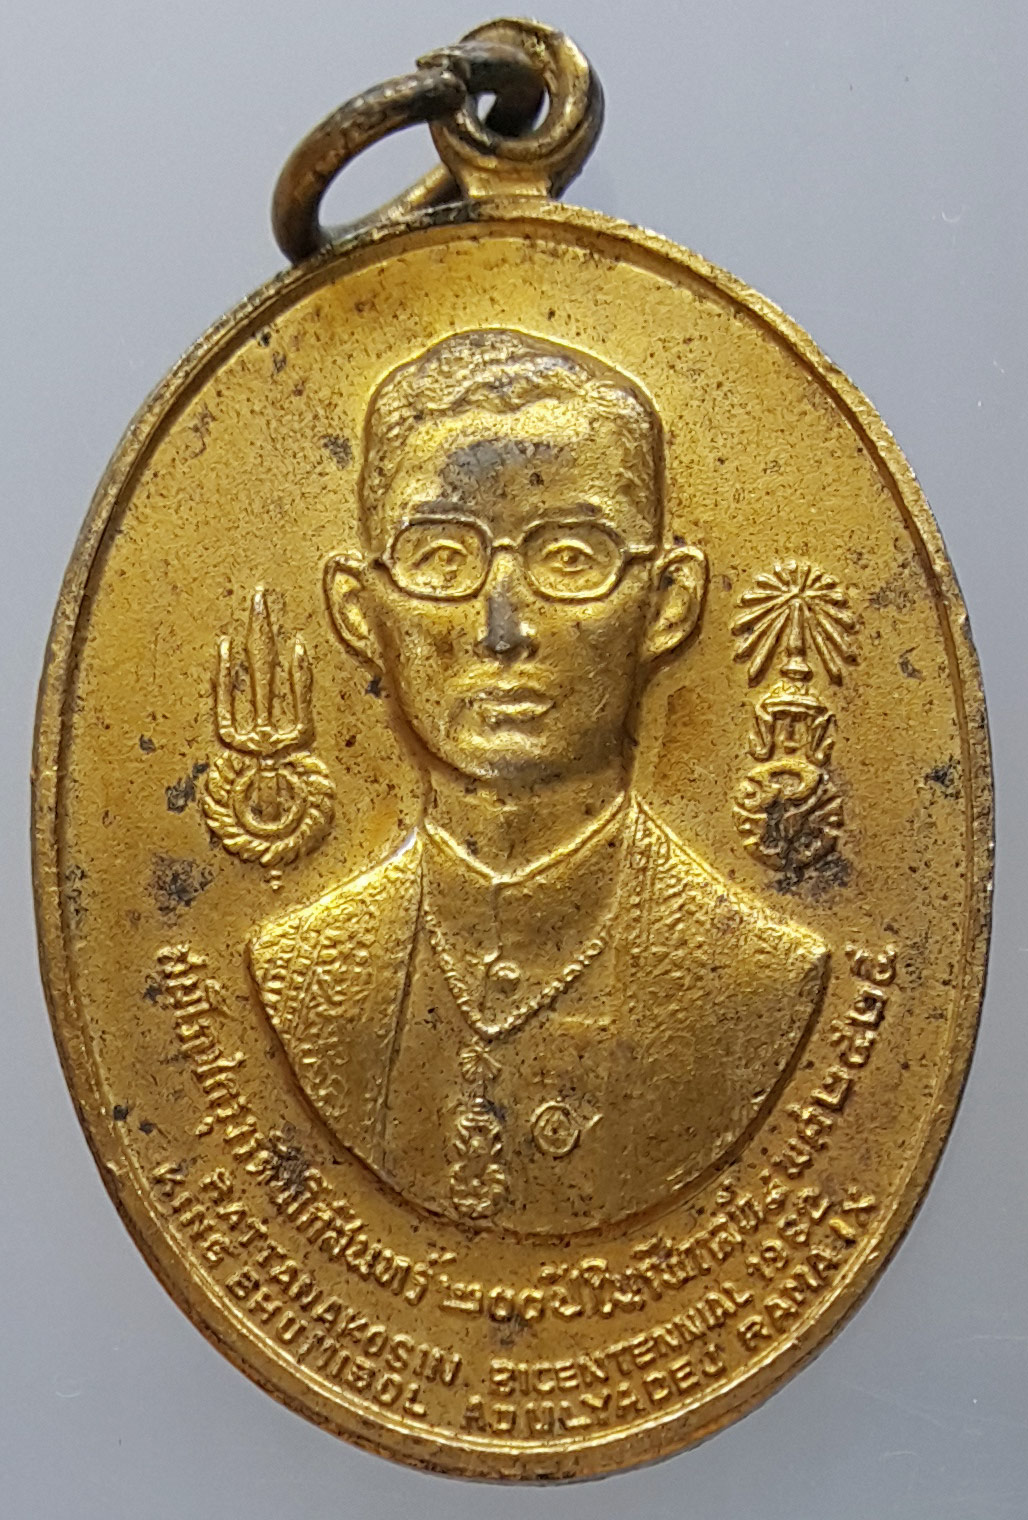 เหรียญ ร.9 หลัง 8 รัชกาล พิธีสมโภชกรุงรัตนโกสินทร์ 200 ปี พ.ศ. 2525 เนื้อทองแดงกะไหล่ทอง